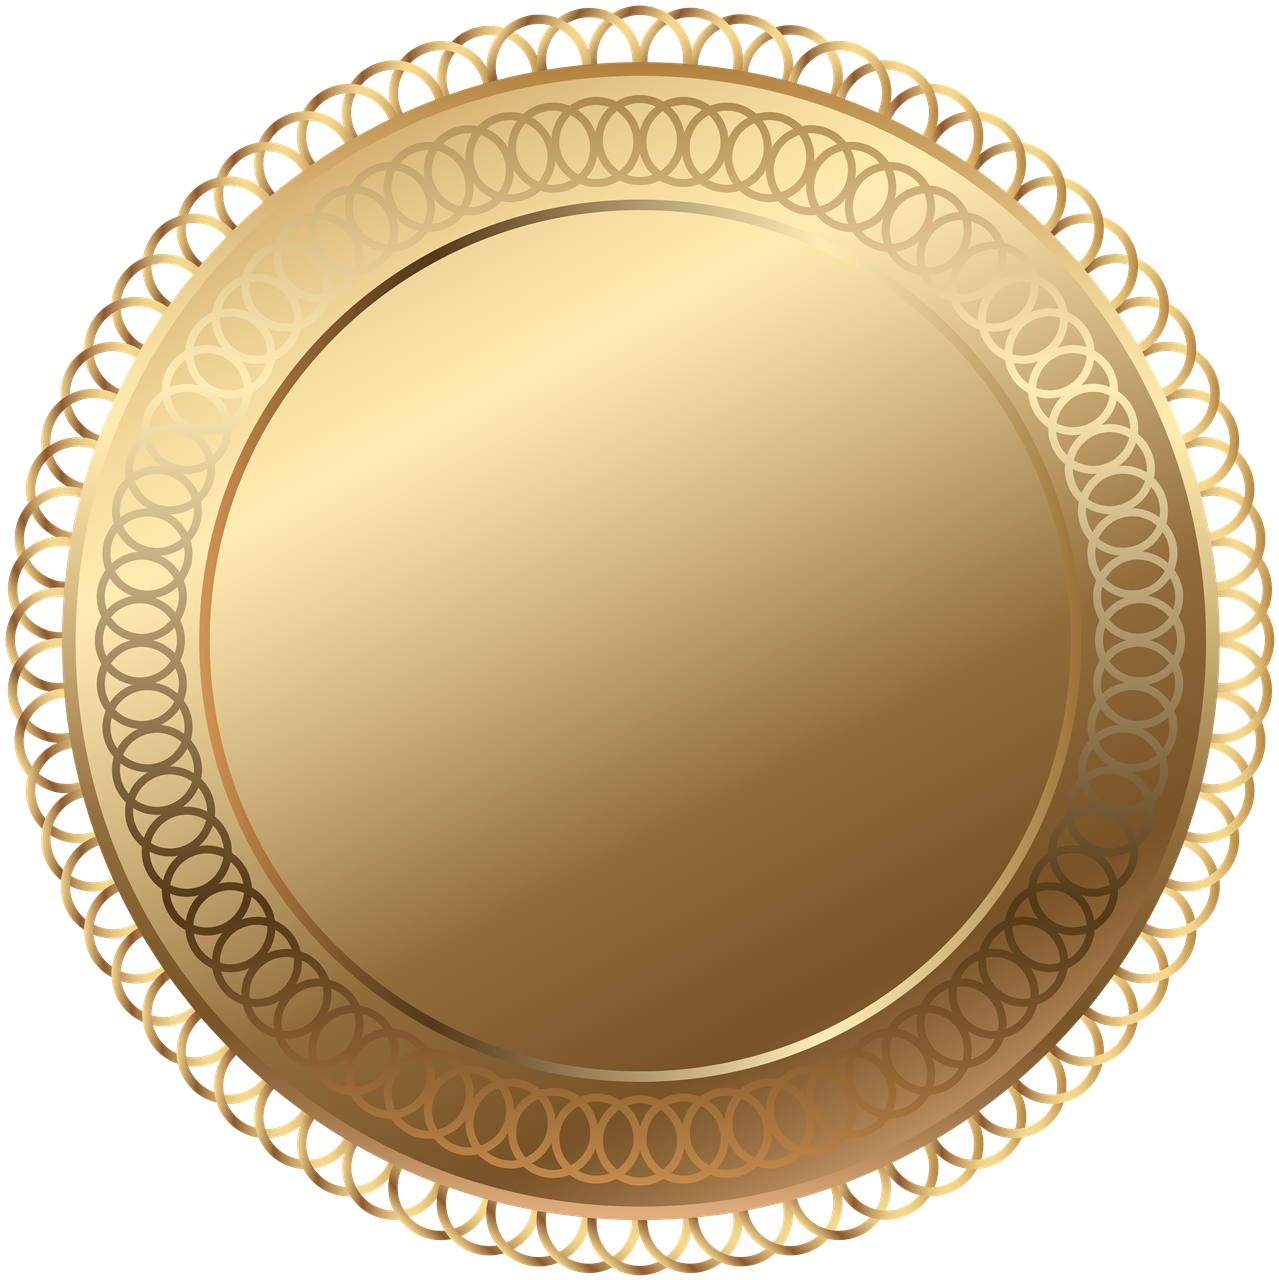 Badge Golden Image Transparente